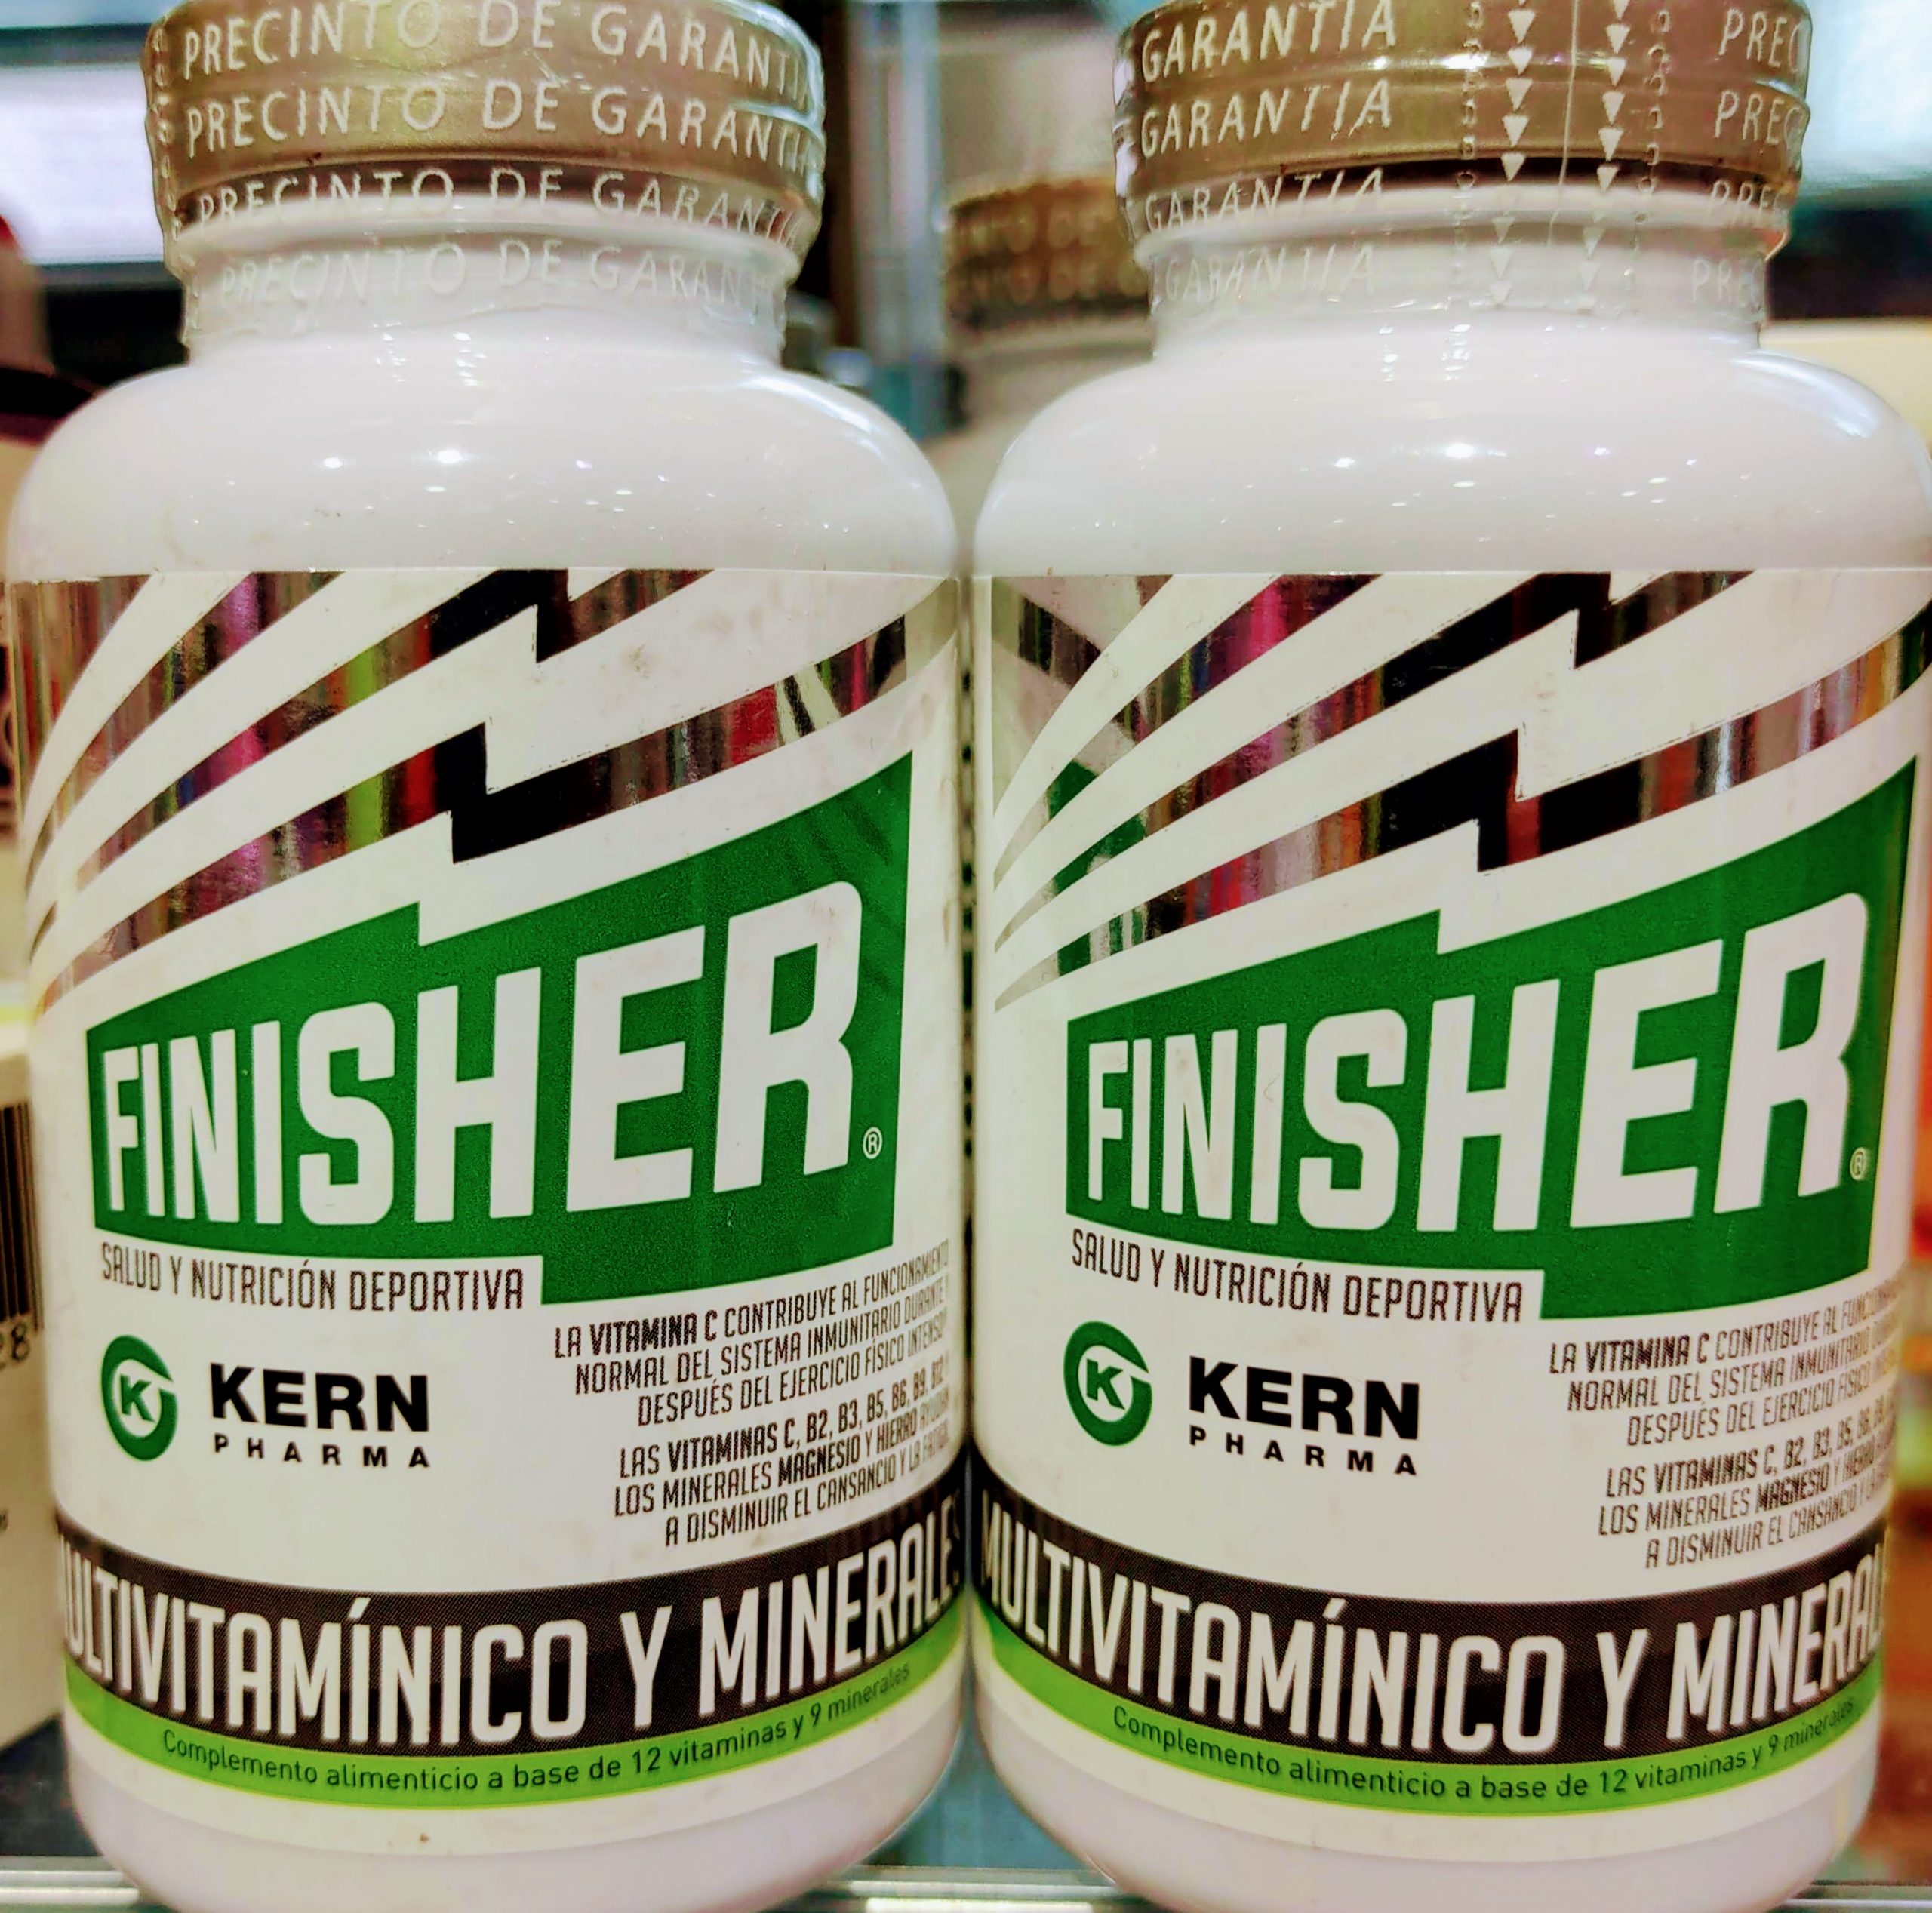 Finisher® es la línea de salud y nutrición deportiva de Kern Pharma dirigida a deportistas y a todos los que apuestan por un estilo de vida saludable